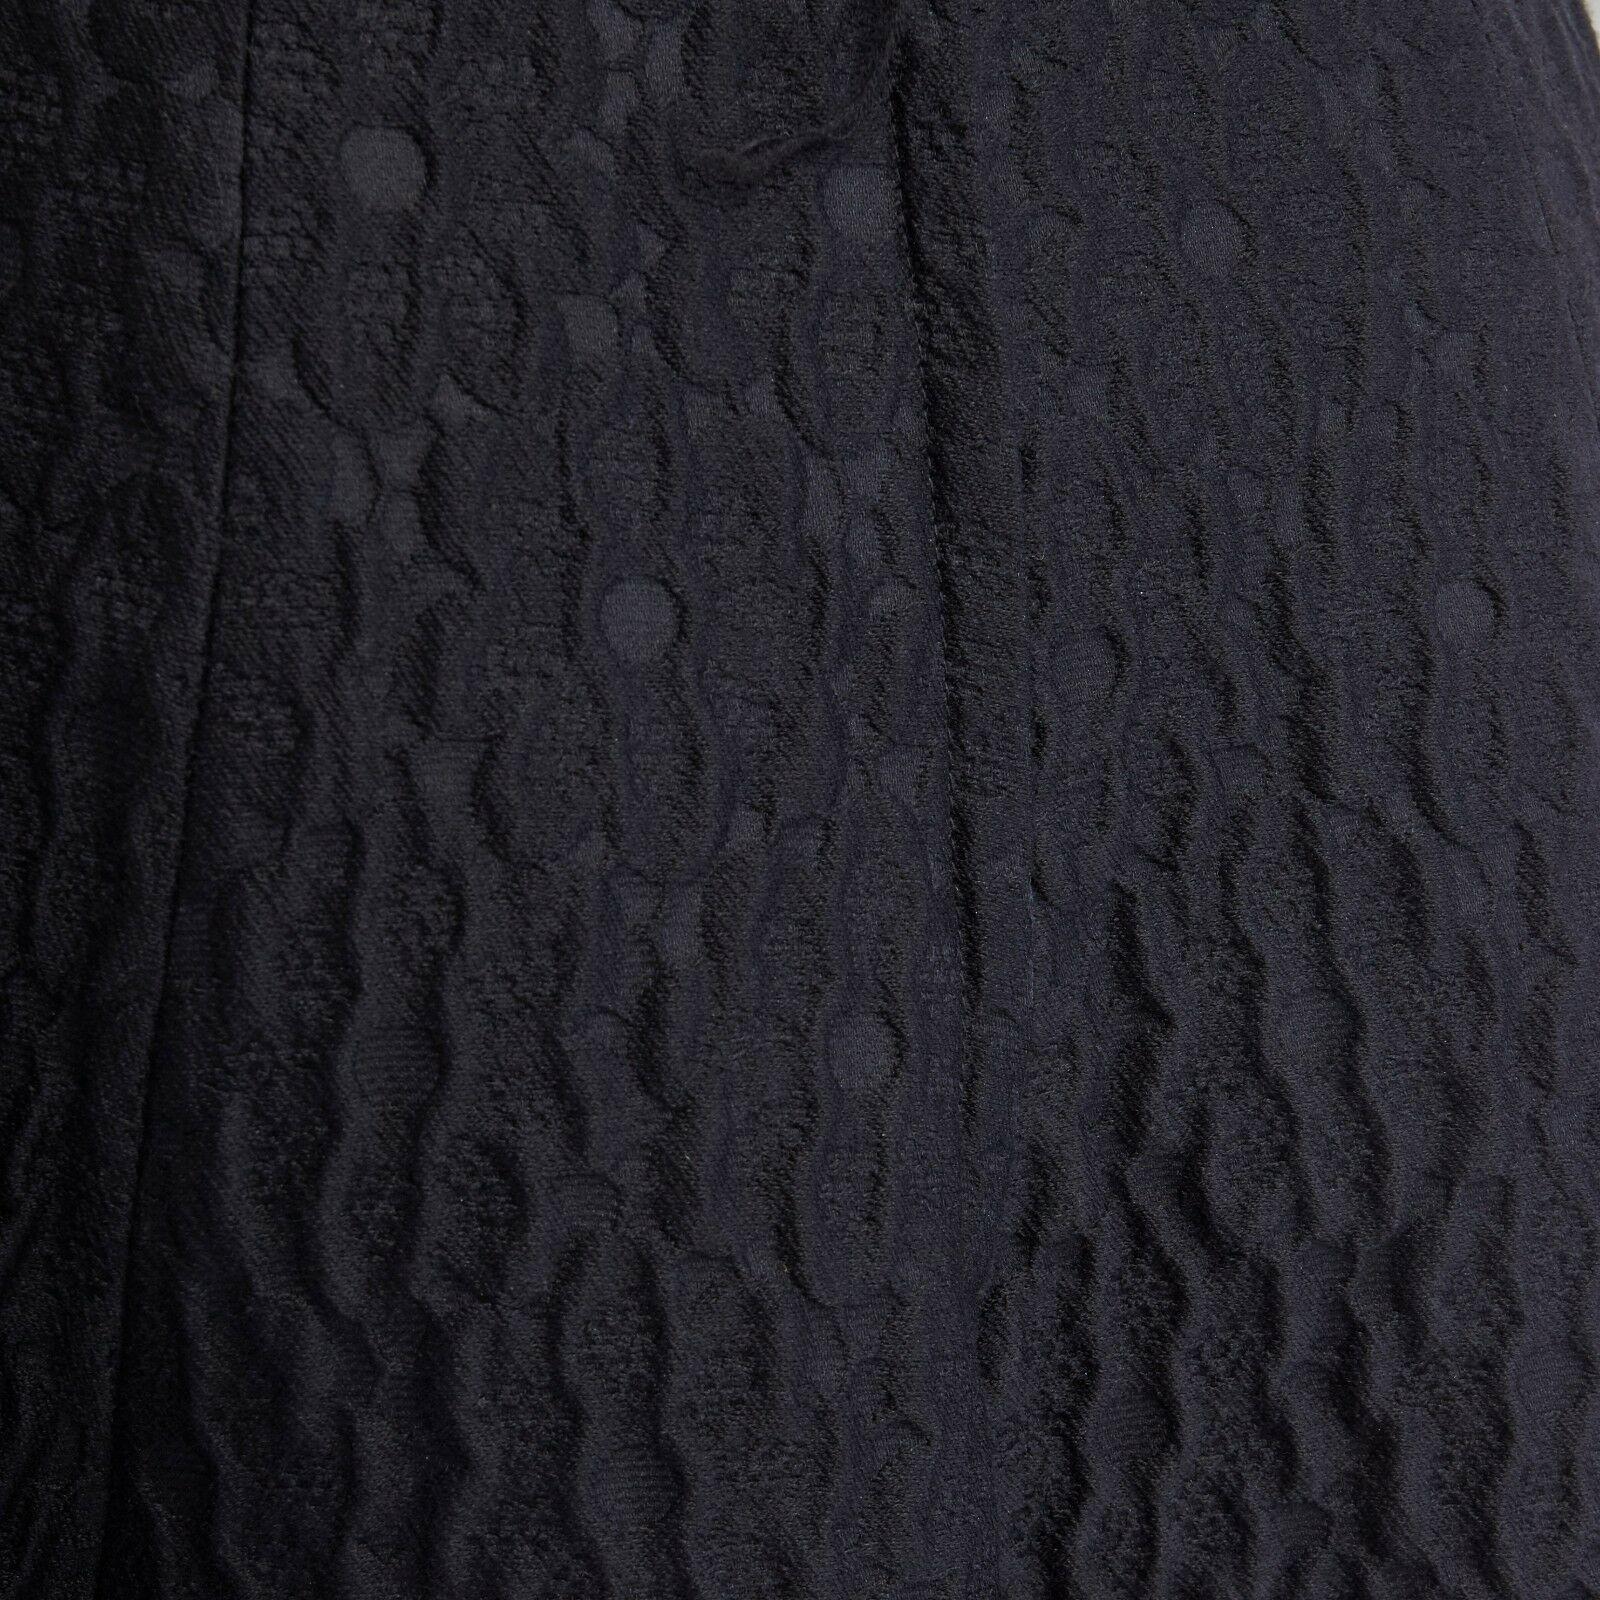 DOLCE GABBANA black wool silk jacquard knee length full flared skirt IT38 26